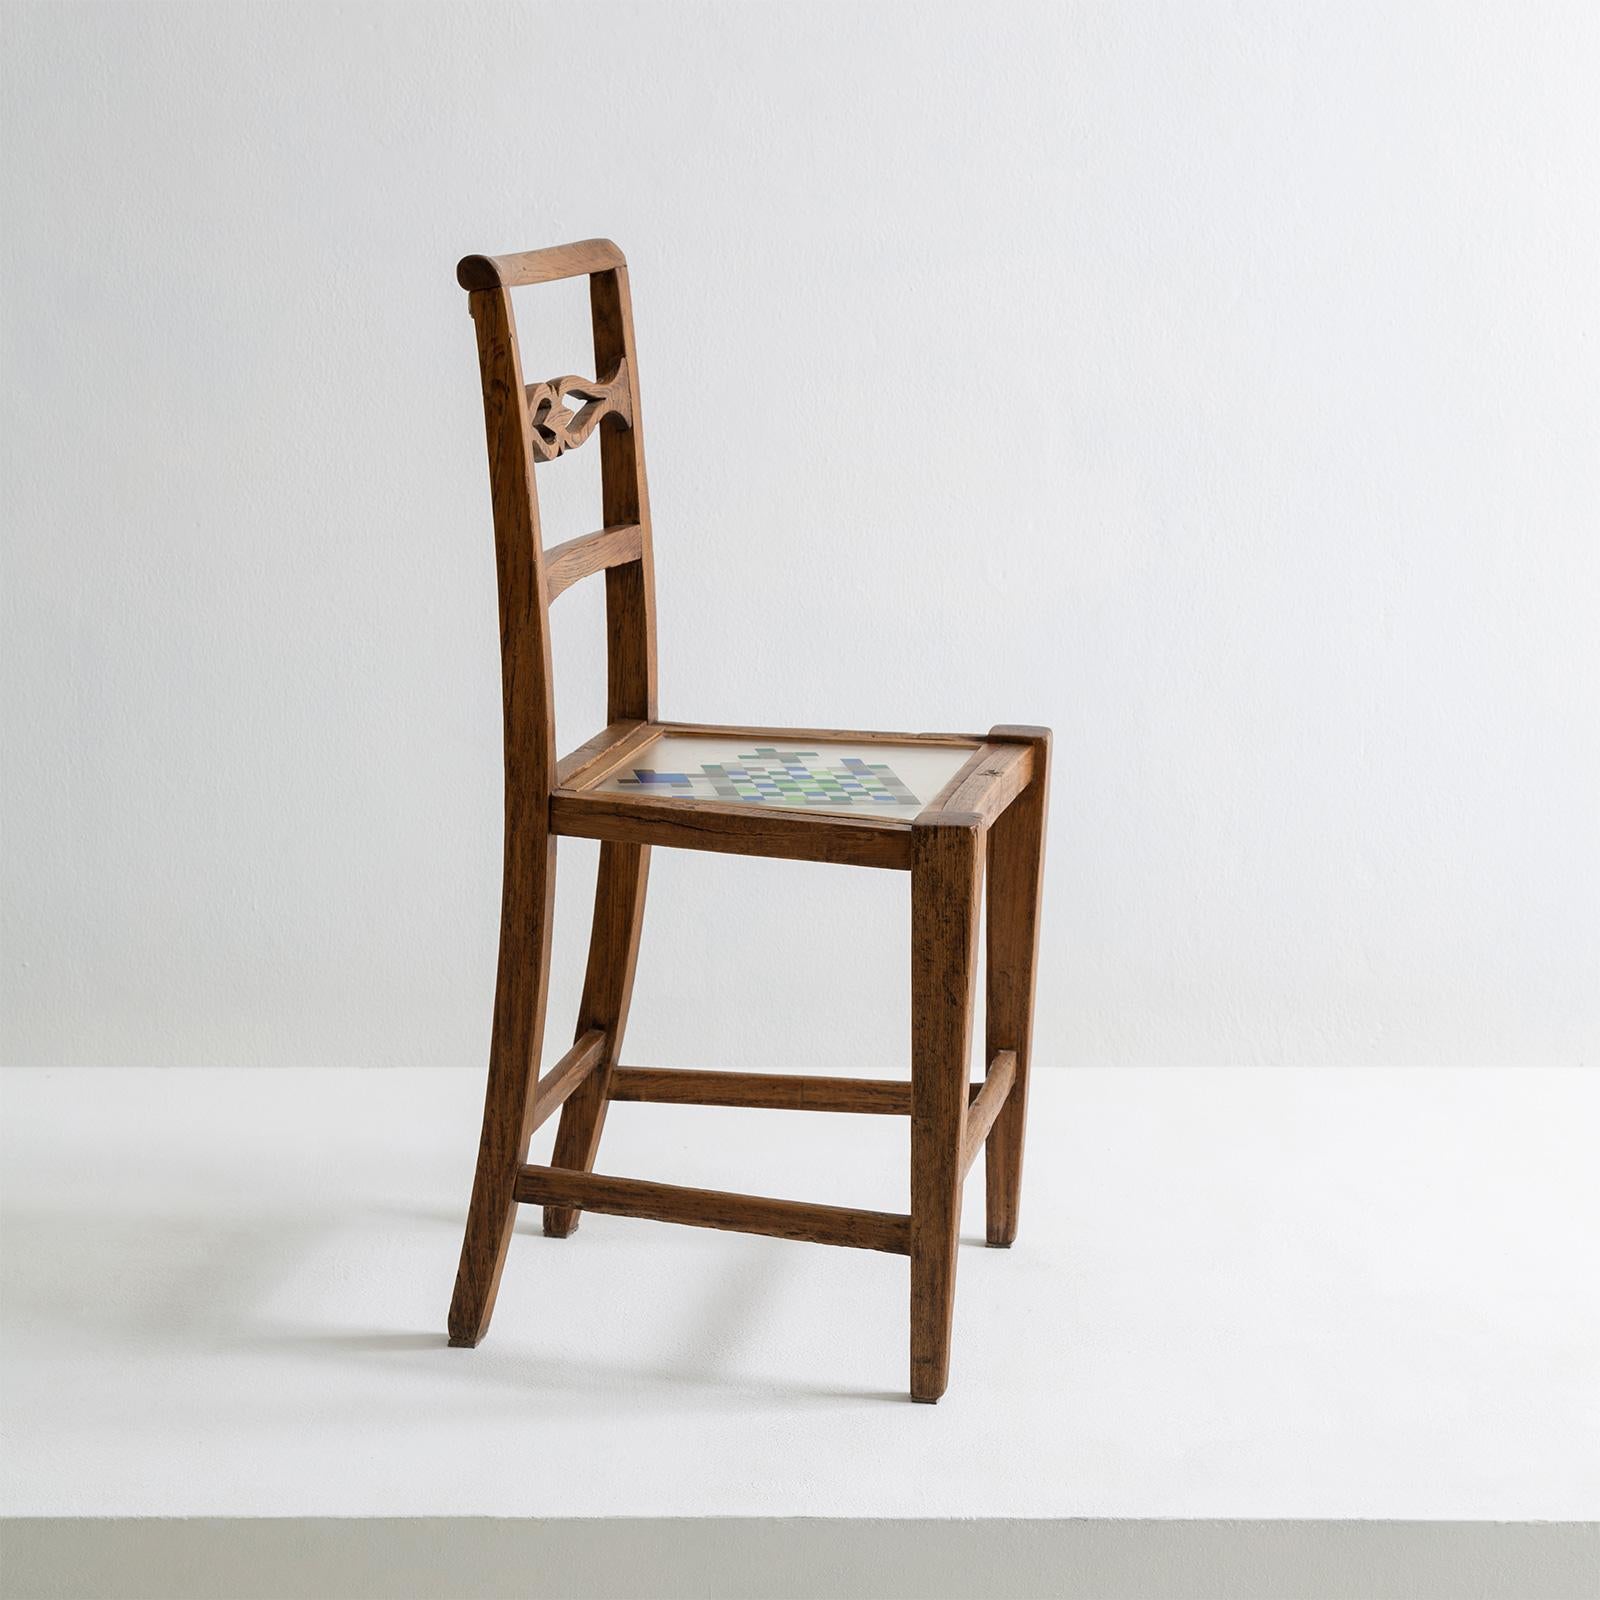 La chaise Mosaiced fait partie de la collection de meubles en mosaïque qui trouve son inspiration dans l'élément 